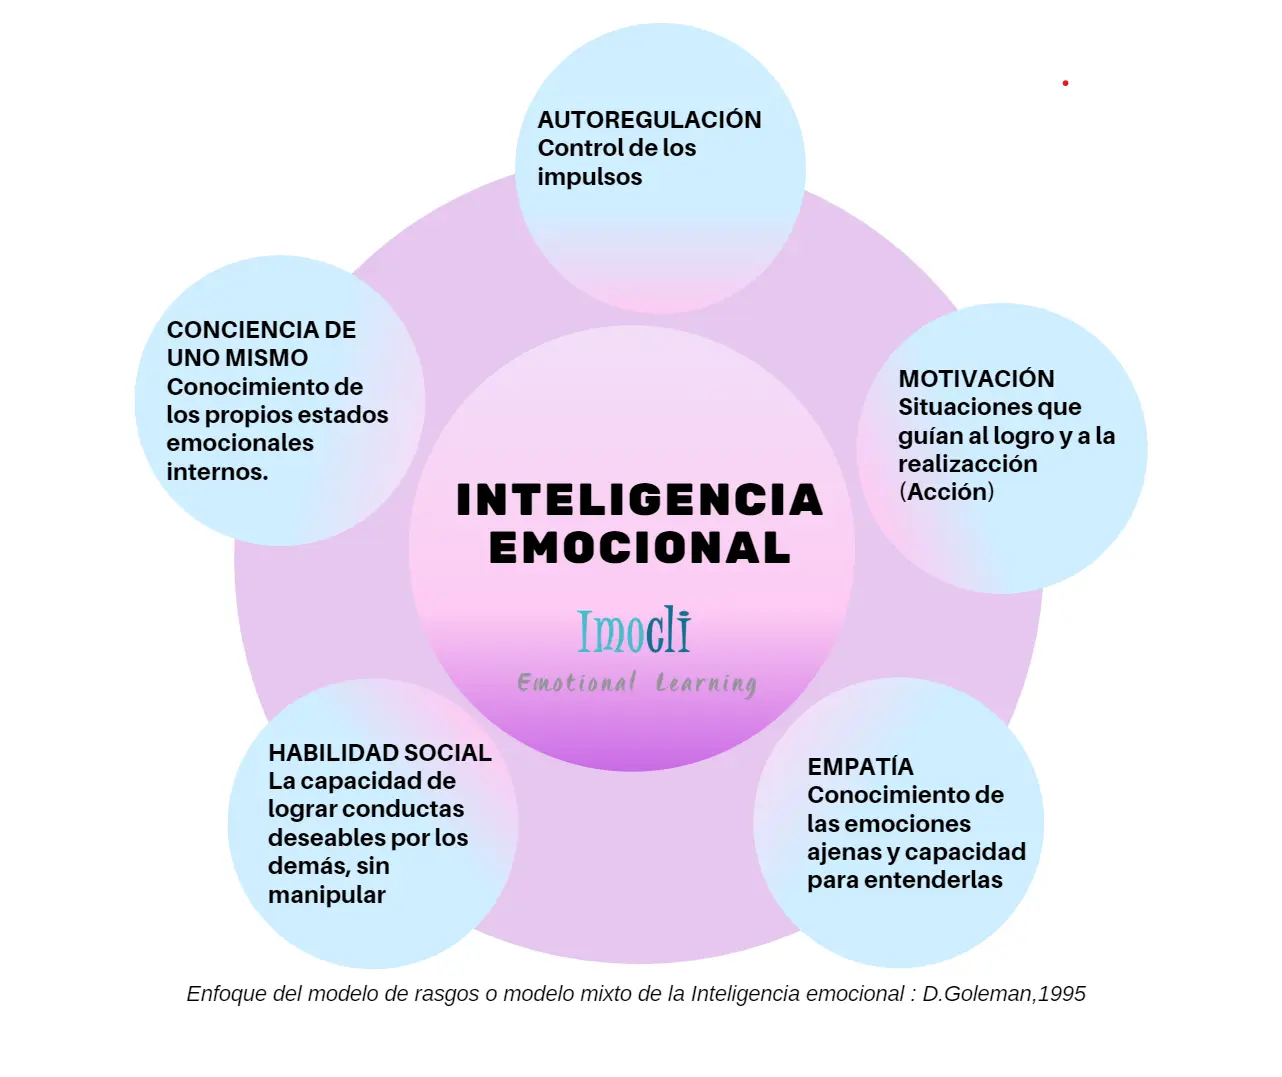 modelos mixtos de inteligencia emocional - Quién desarrolló el modelo mixto de inteligencia emocional